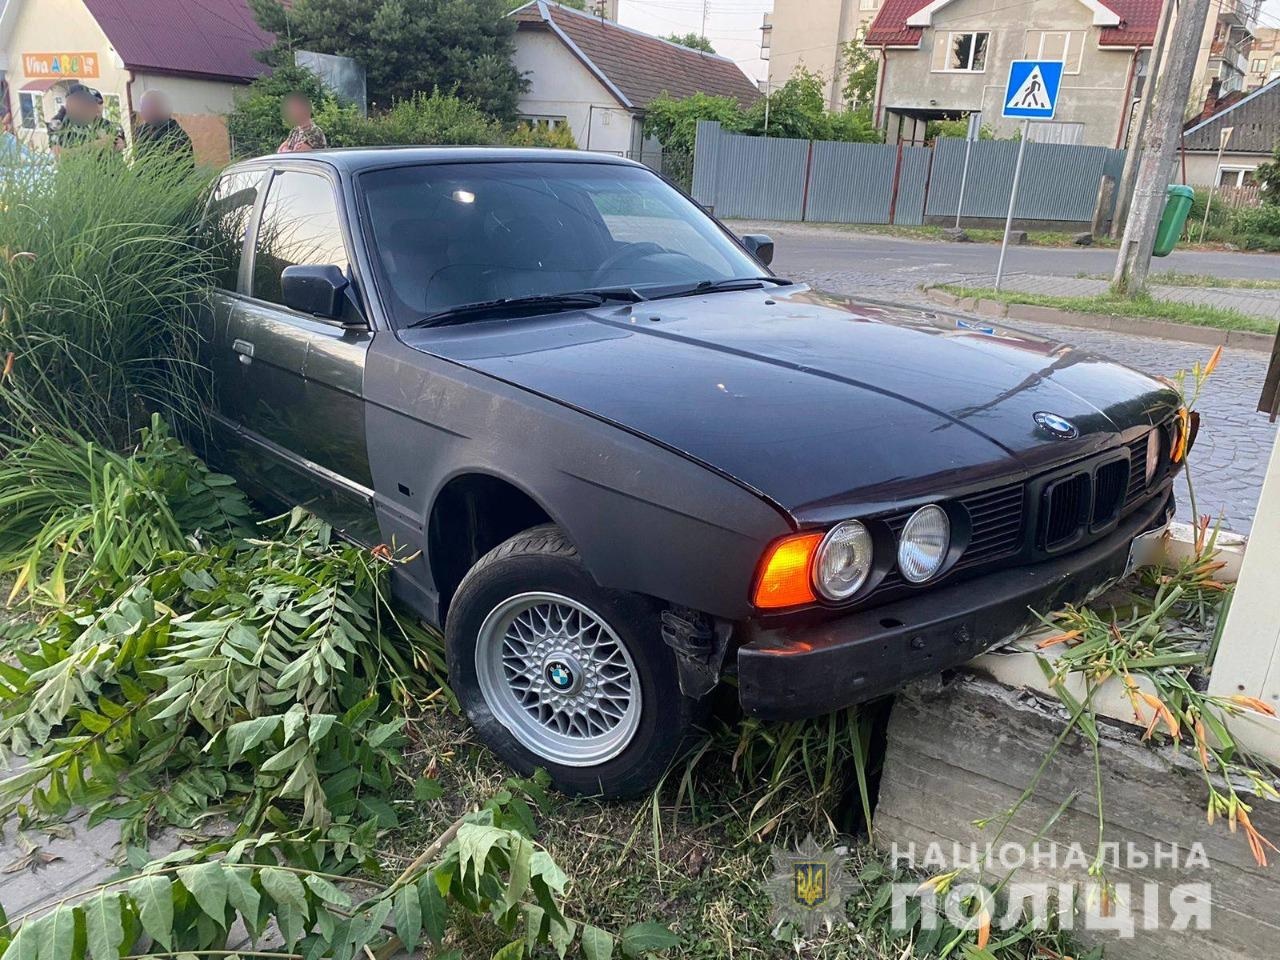 Вчора, 20 червня, вночі до поліції надійшло повідомлення від працівника АЗС у селі Соломоново про викрадення його автомобіля марки «BMW». 